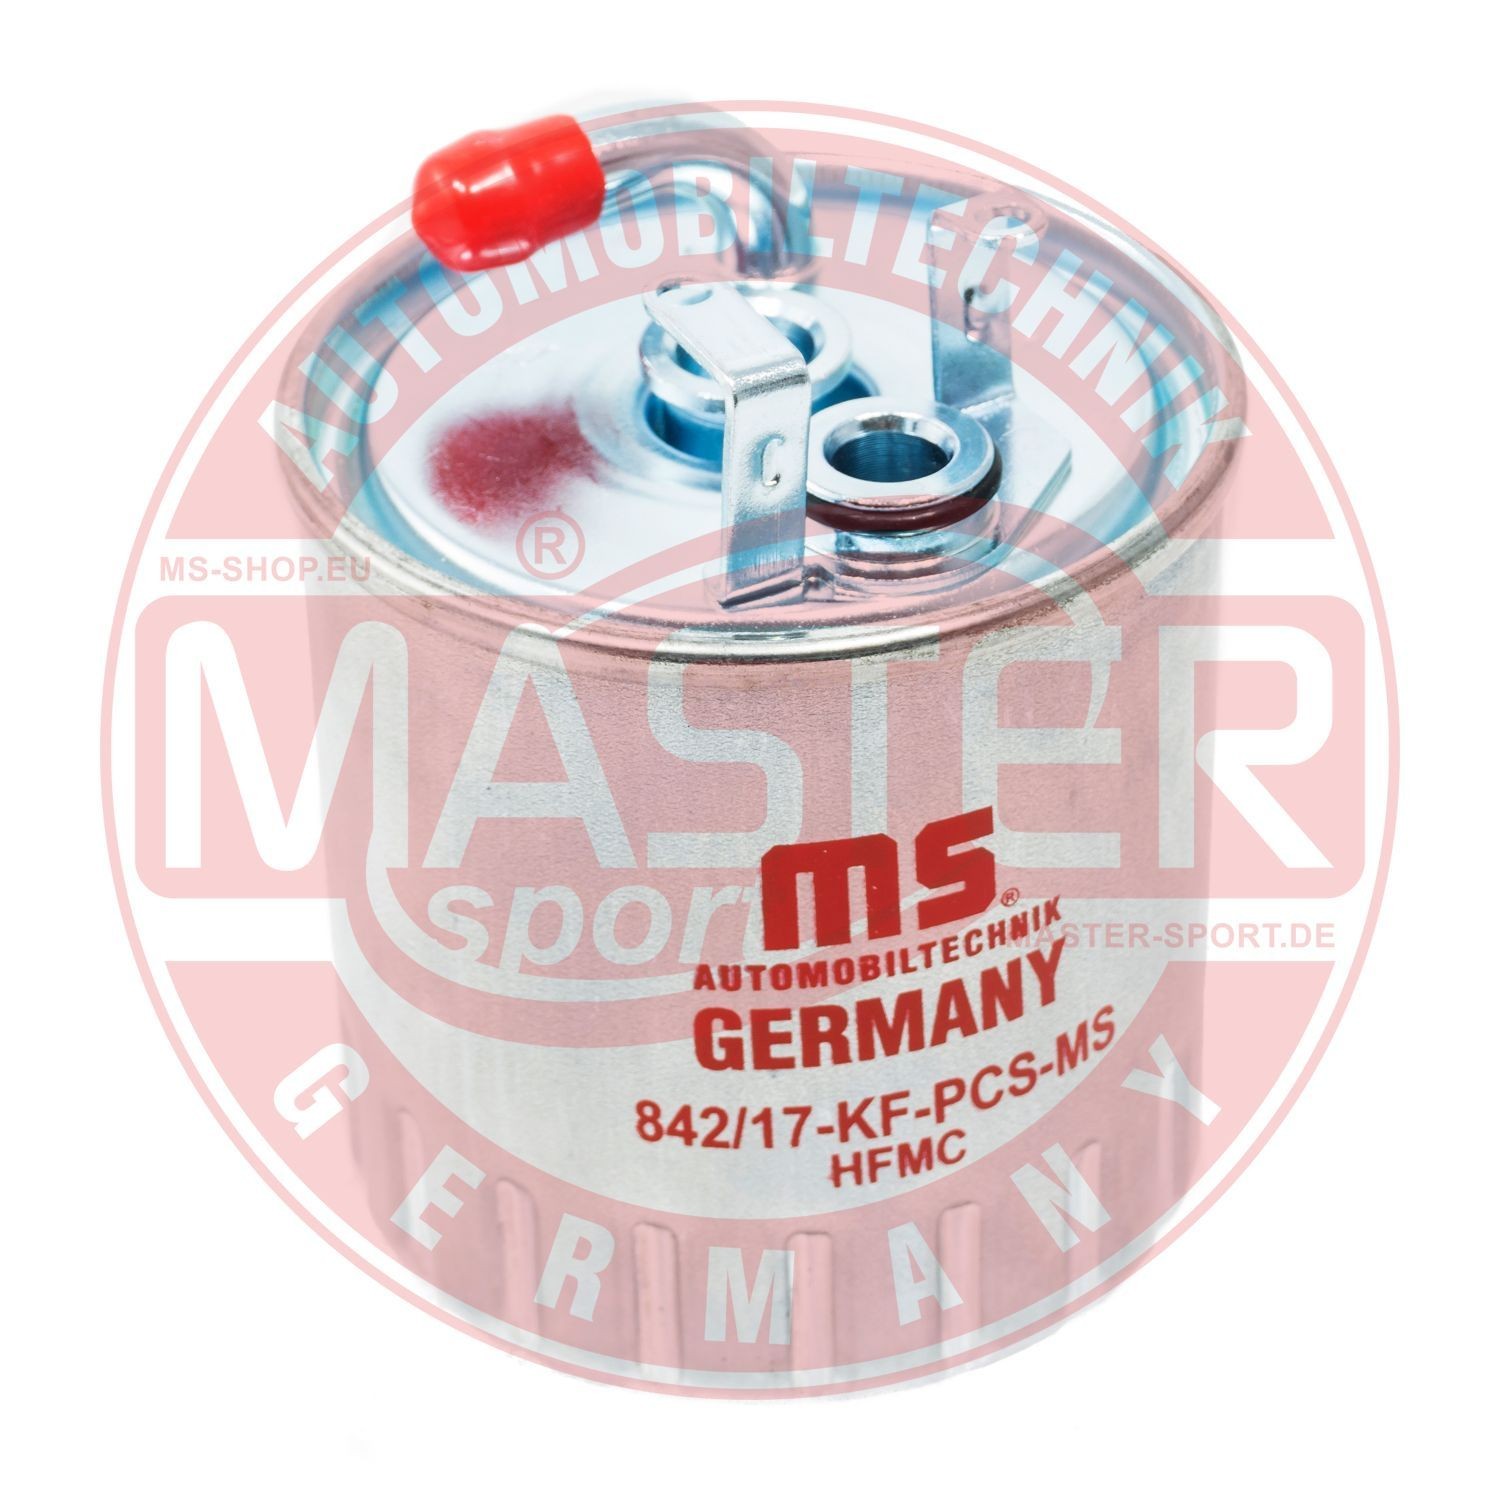 430842170 MASTER-SPORT 842/17-KF-PCS-MS Fuel filter 668 092 01 01